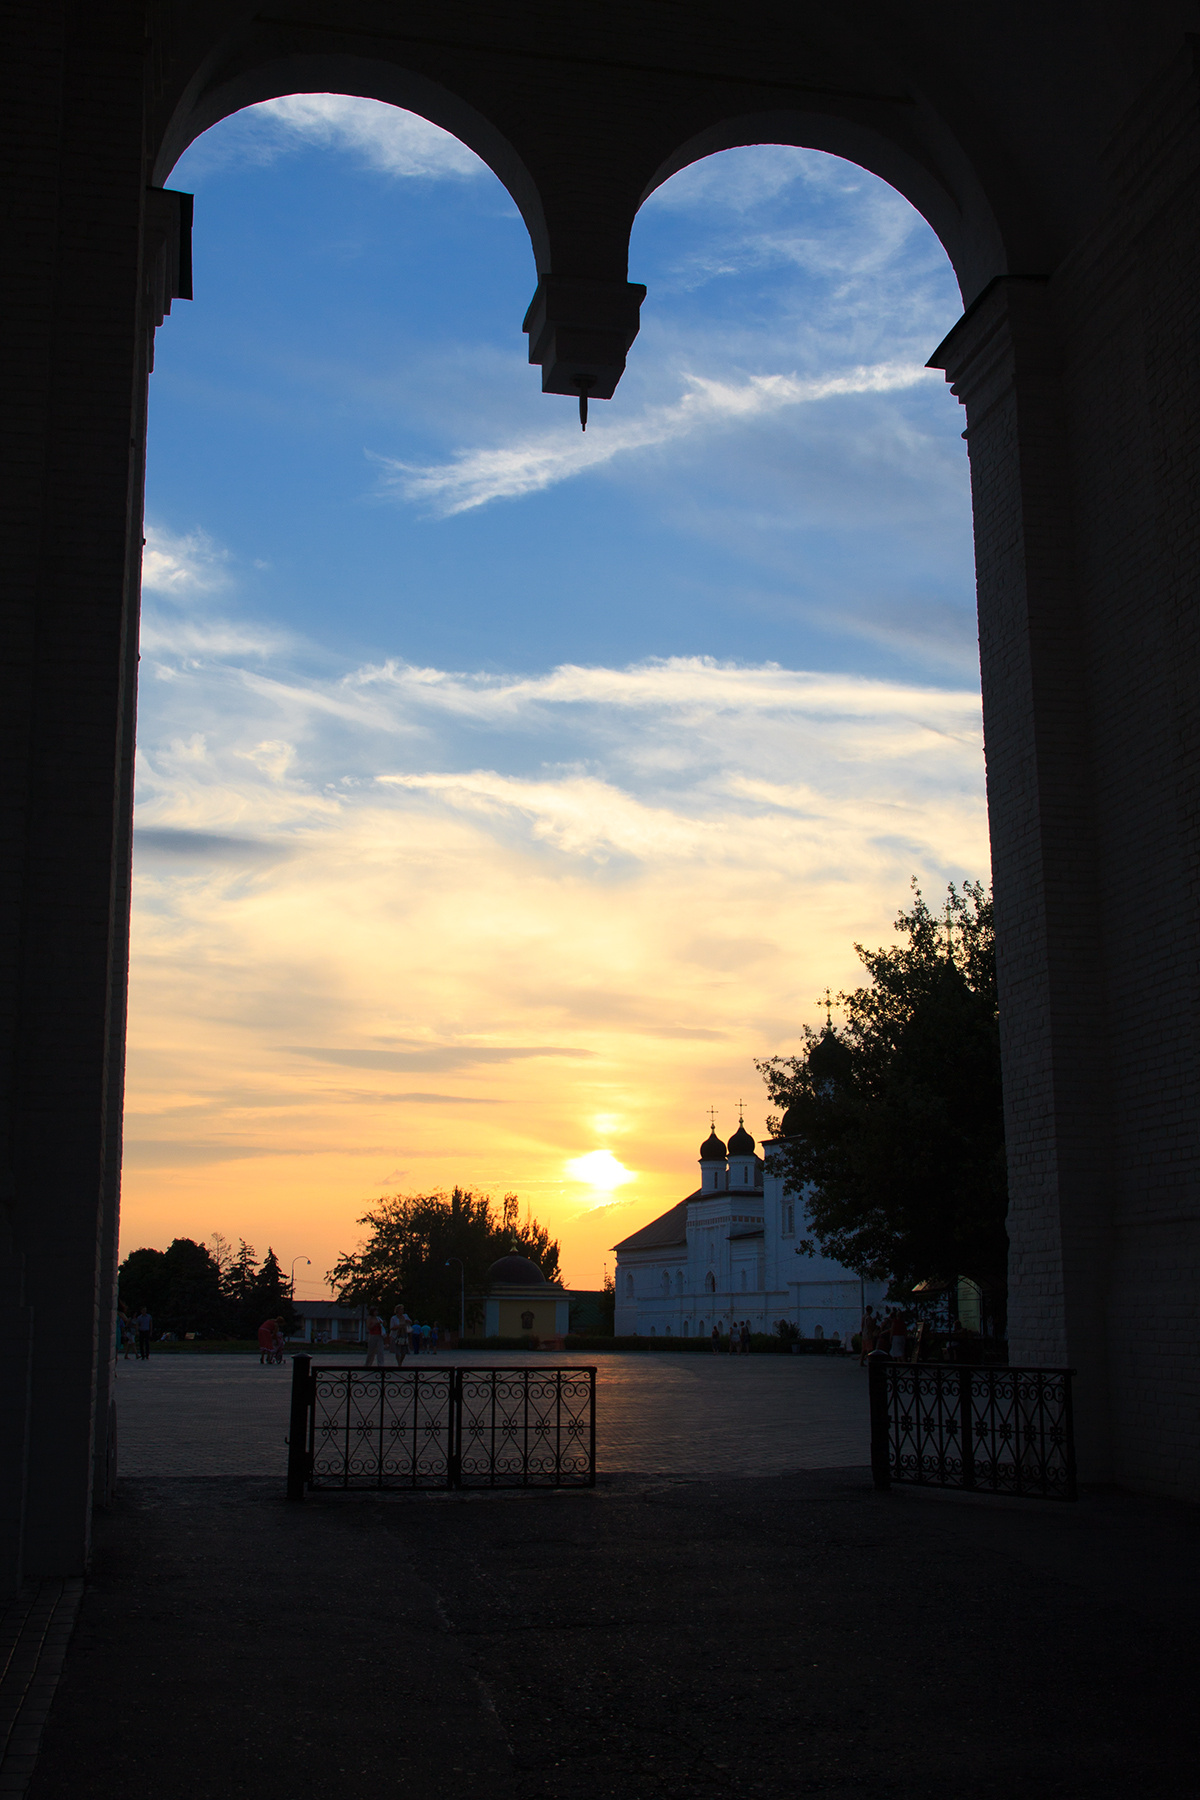 Закатный портал астрахань лето июль 2018 закат город юг тепло красота астраханский кремль рпц троицкий собор крепостная стена